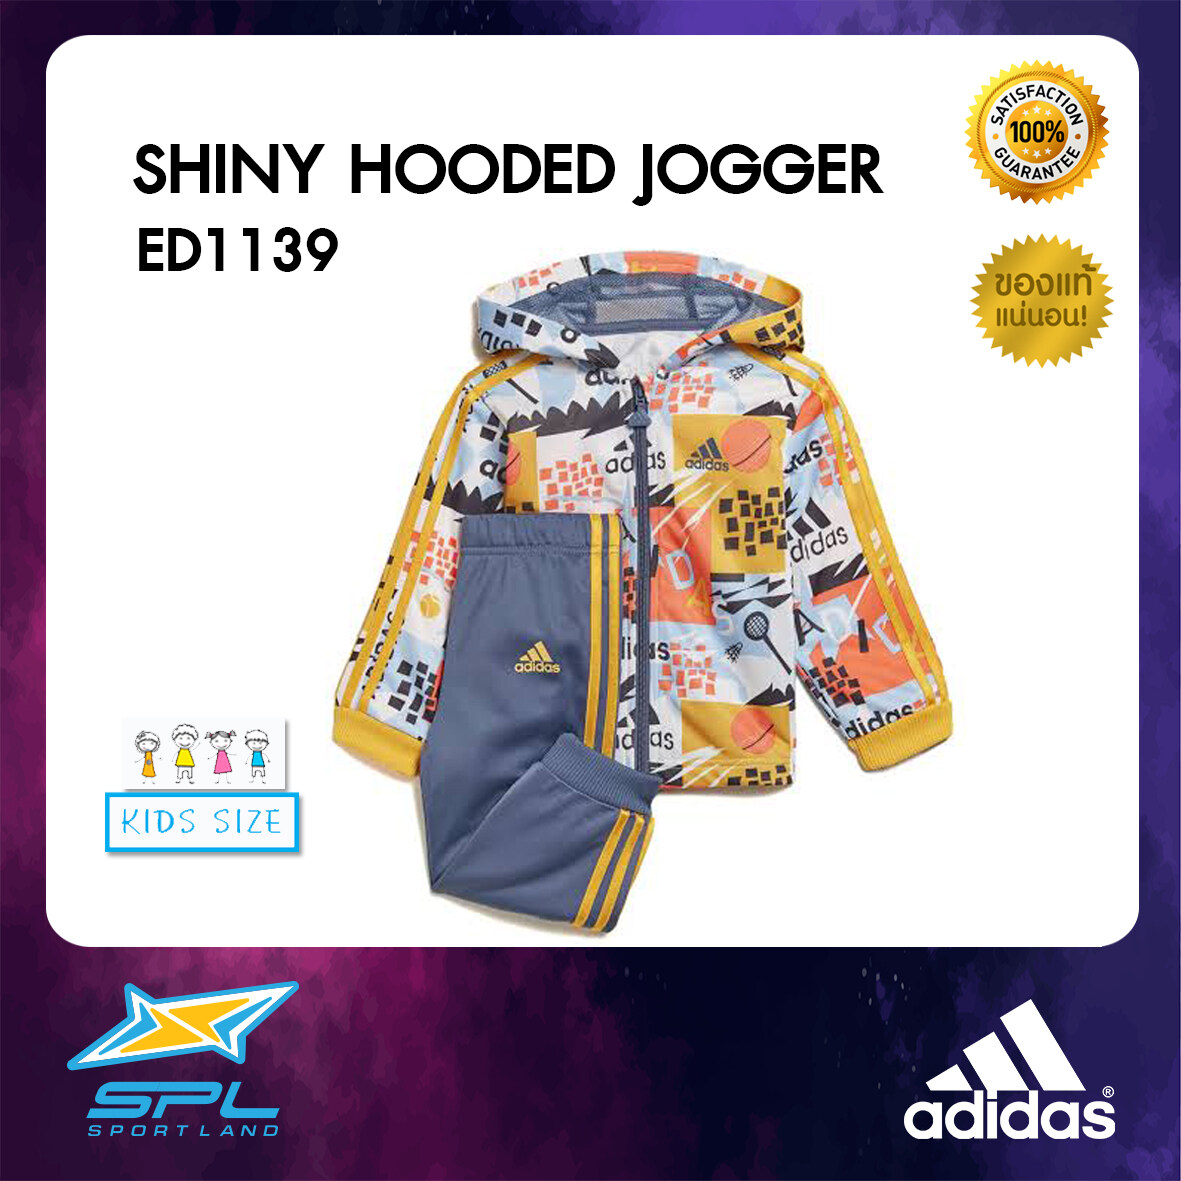 Adidas ชุดเสื้อกางเกง ชุดออกกำลังกาย ชุดเด็กผู้ชาย ชุดกีฬาเด็ก อาดิดาส Training Infants   FZ HD JOG Shiny ED1139  (1400)